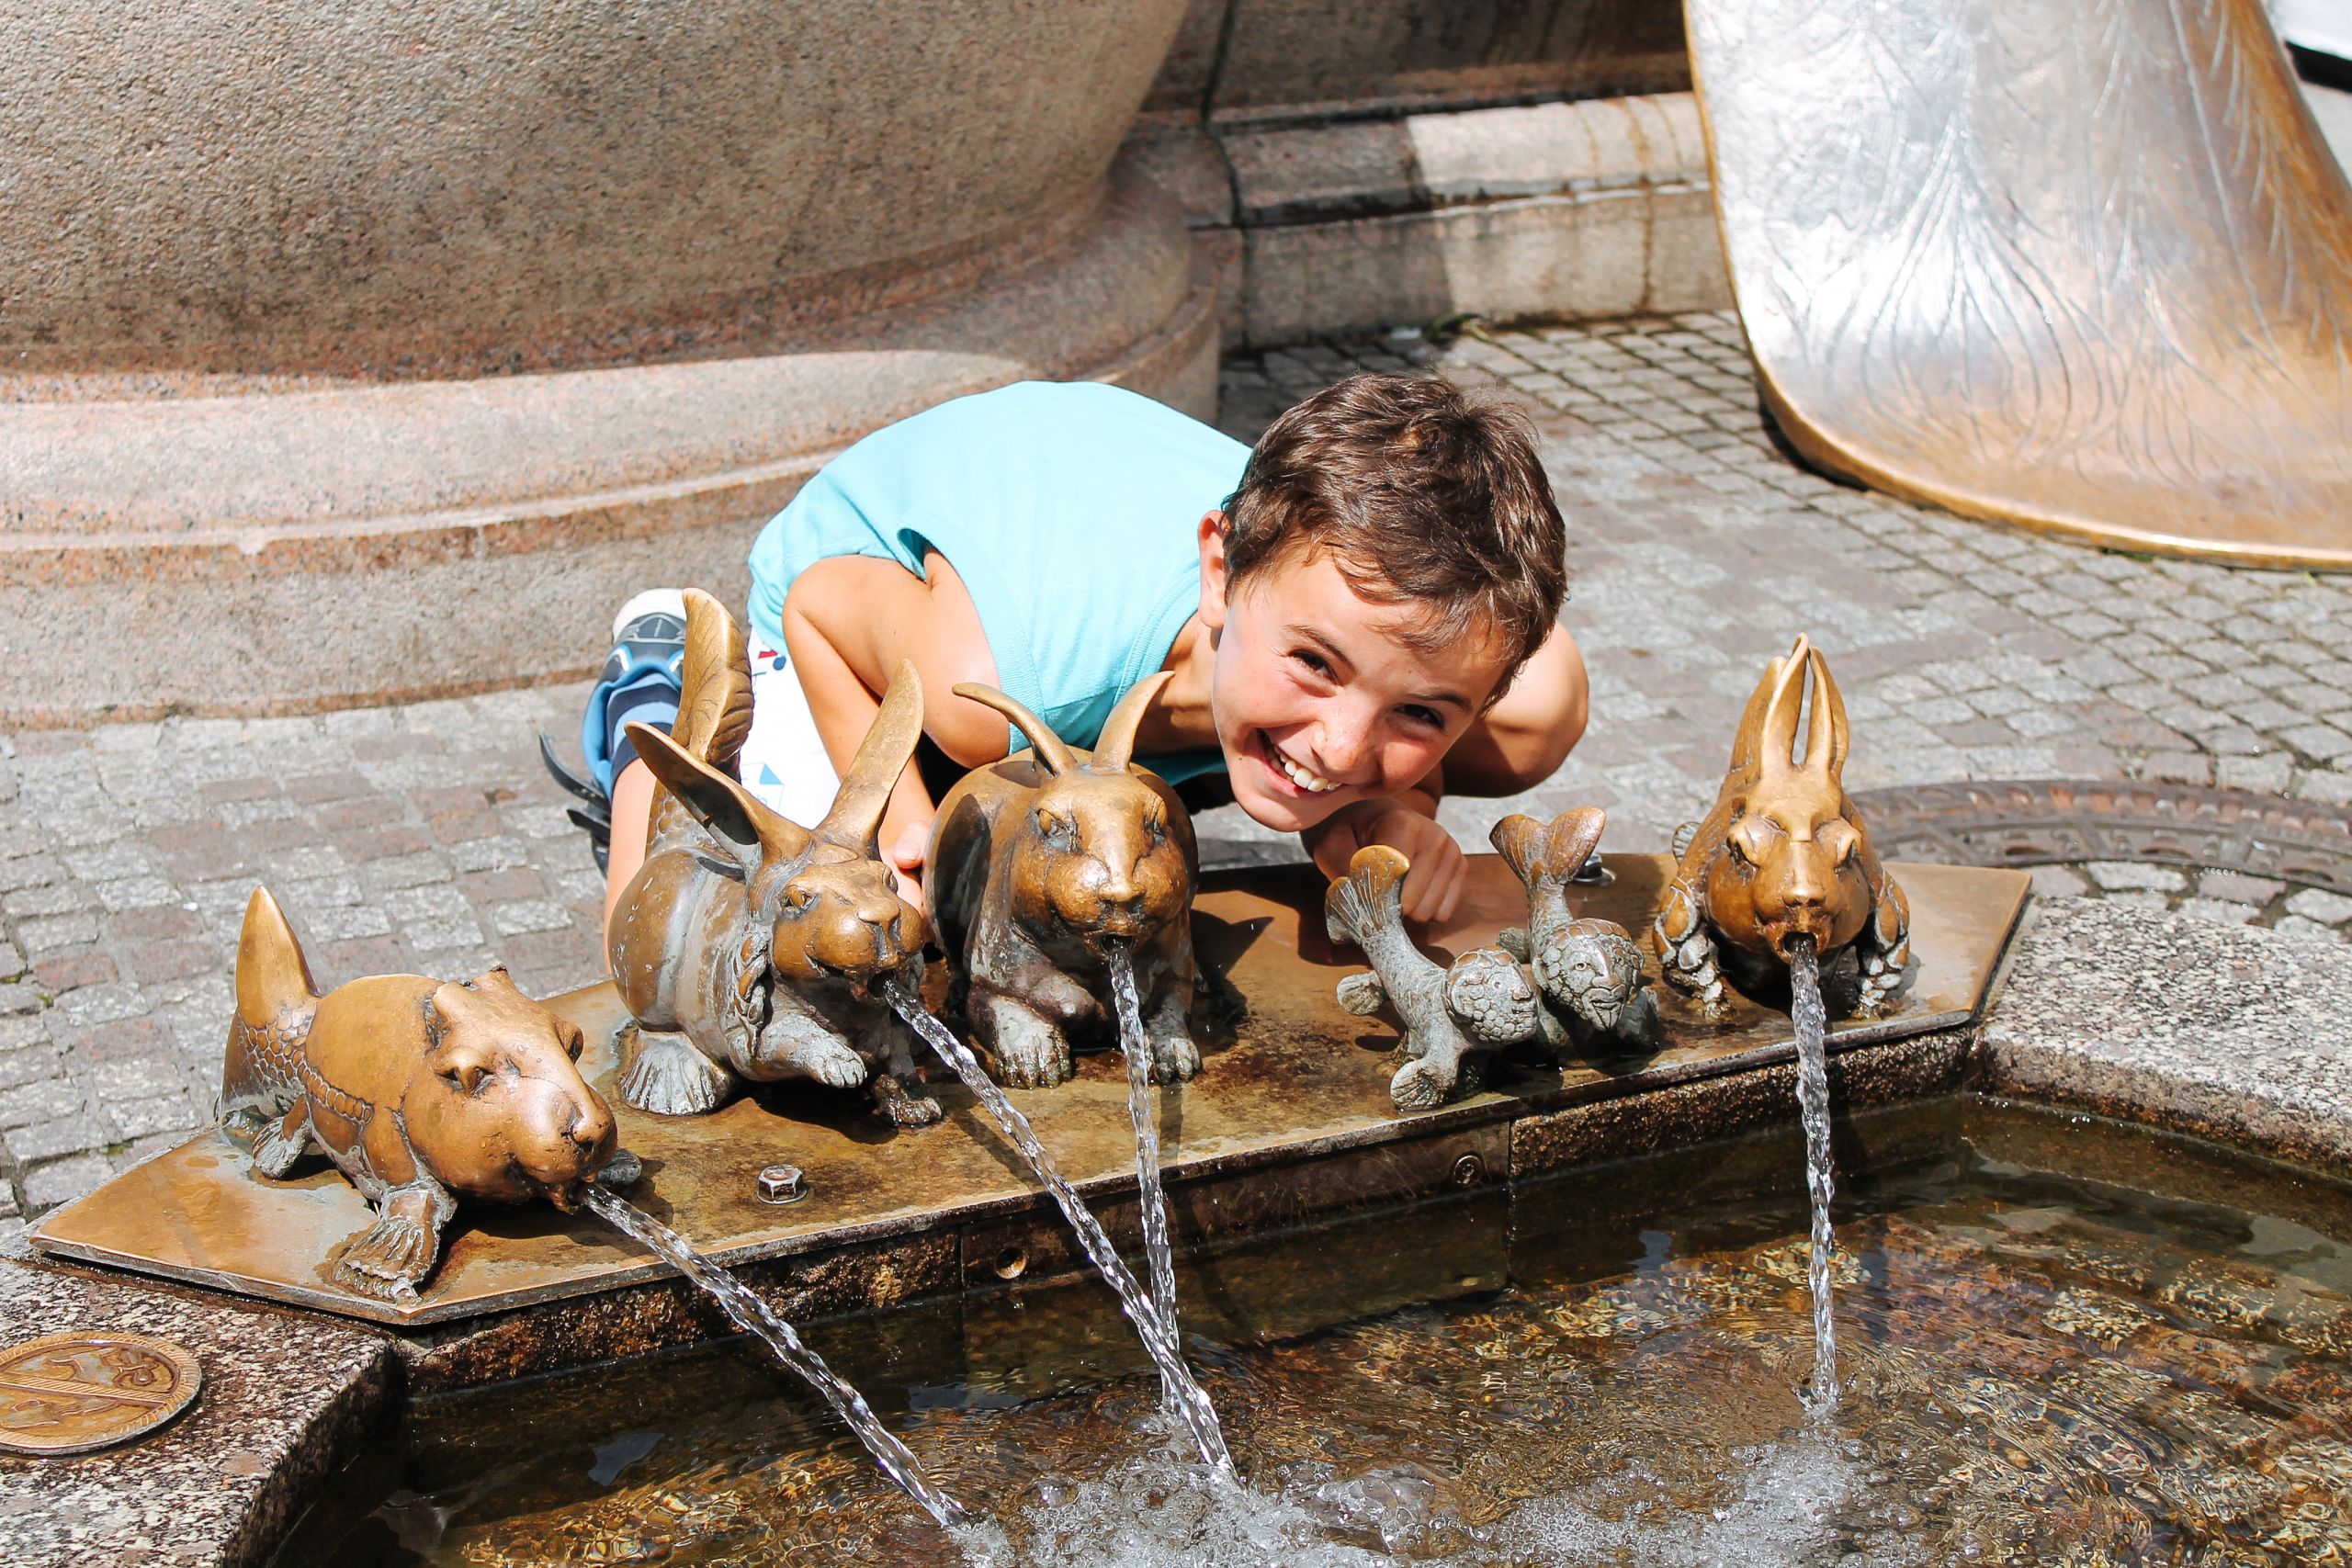 Bambino appoggiato a delle fontanelle d'acqua a forma di animaletti, vacanza all'aria aperta lungo il lago di Costanza